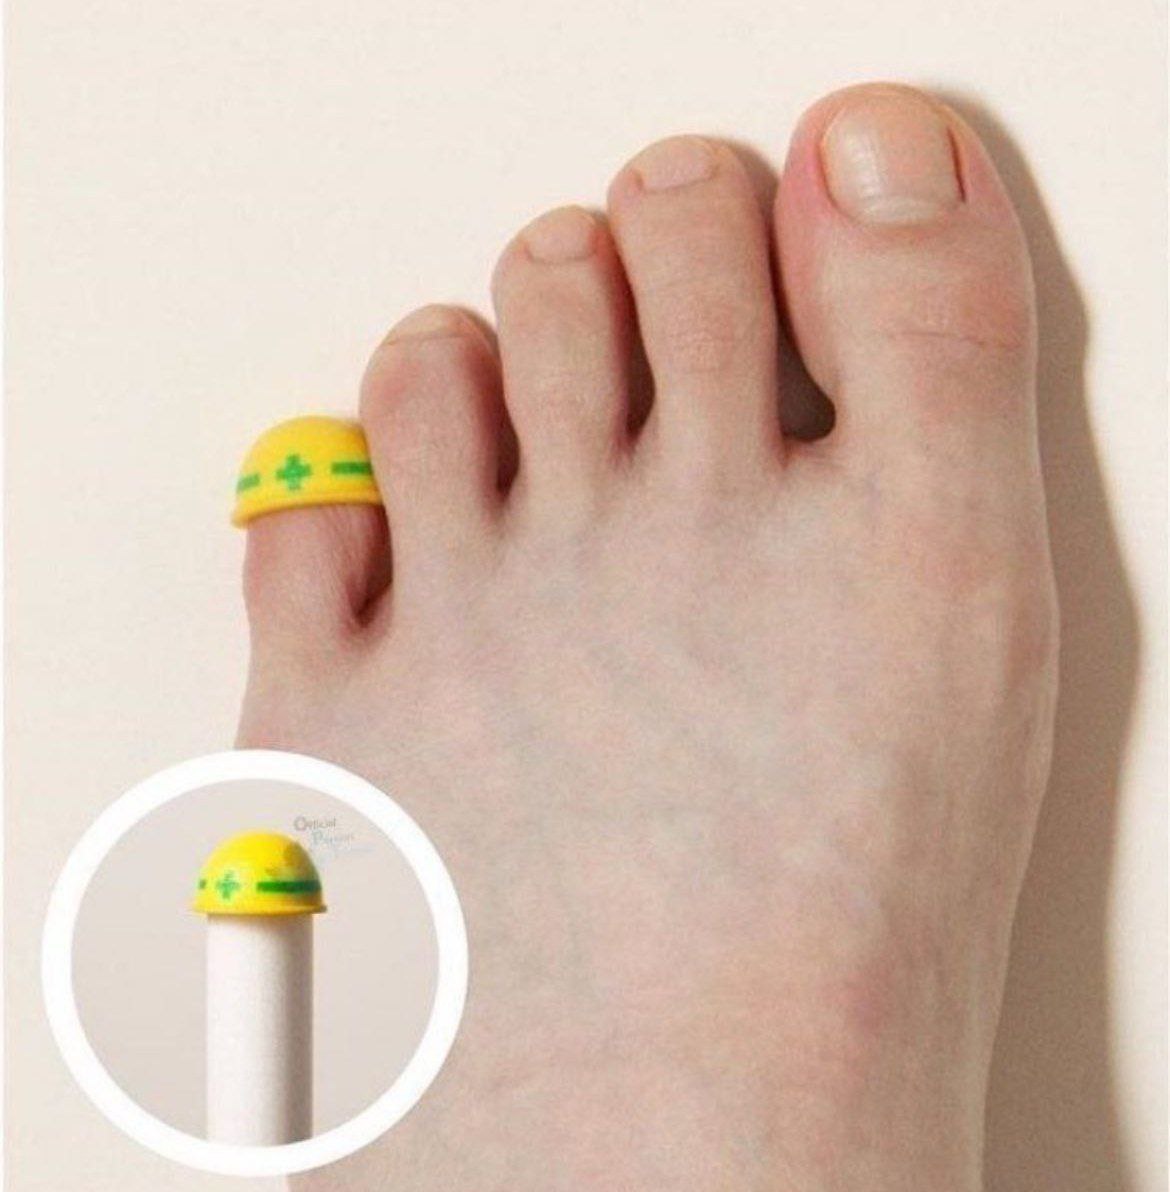 اختراع عجیب برای انگشت پا